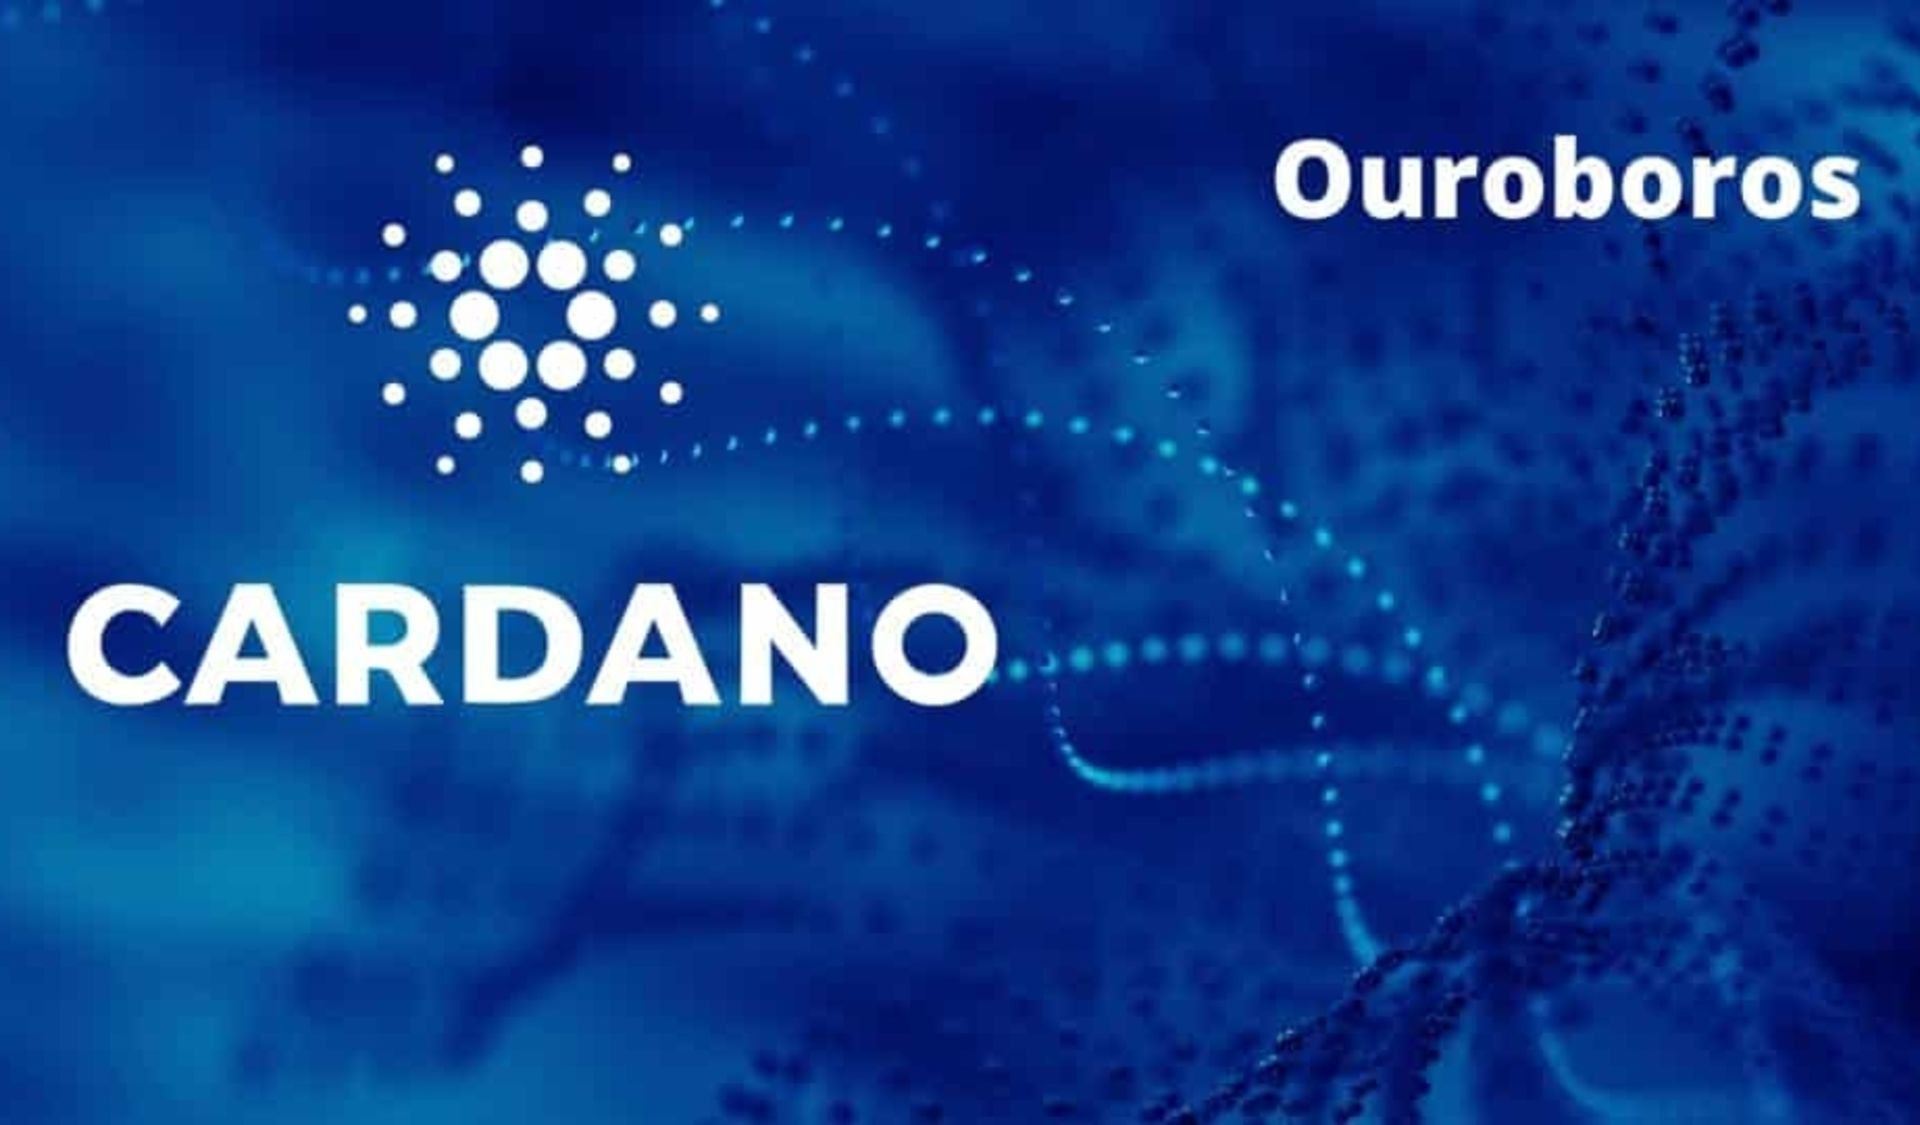 مرجع متخصصين ايران پروتكل اجماع اثبات سهام كاردانو موسوم به اوروبروس